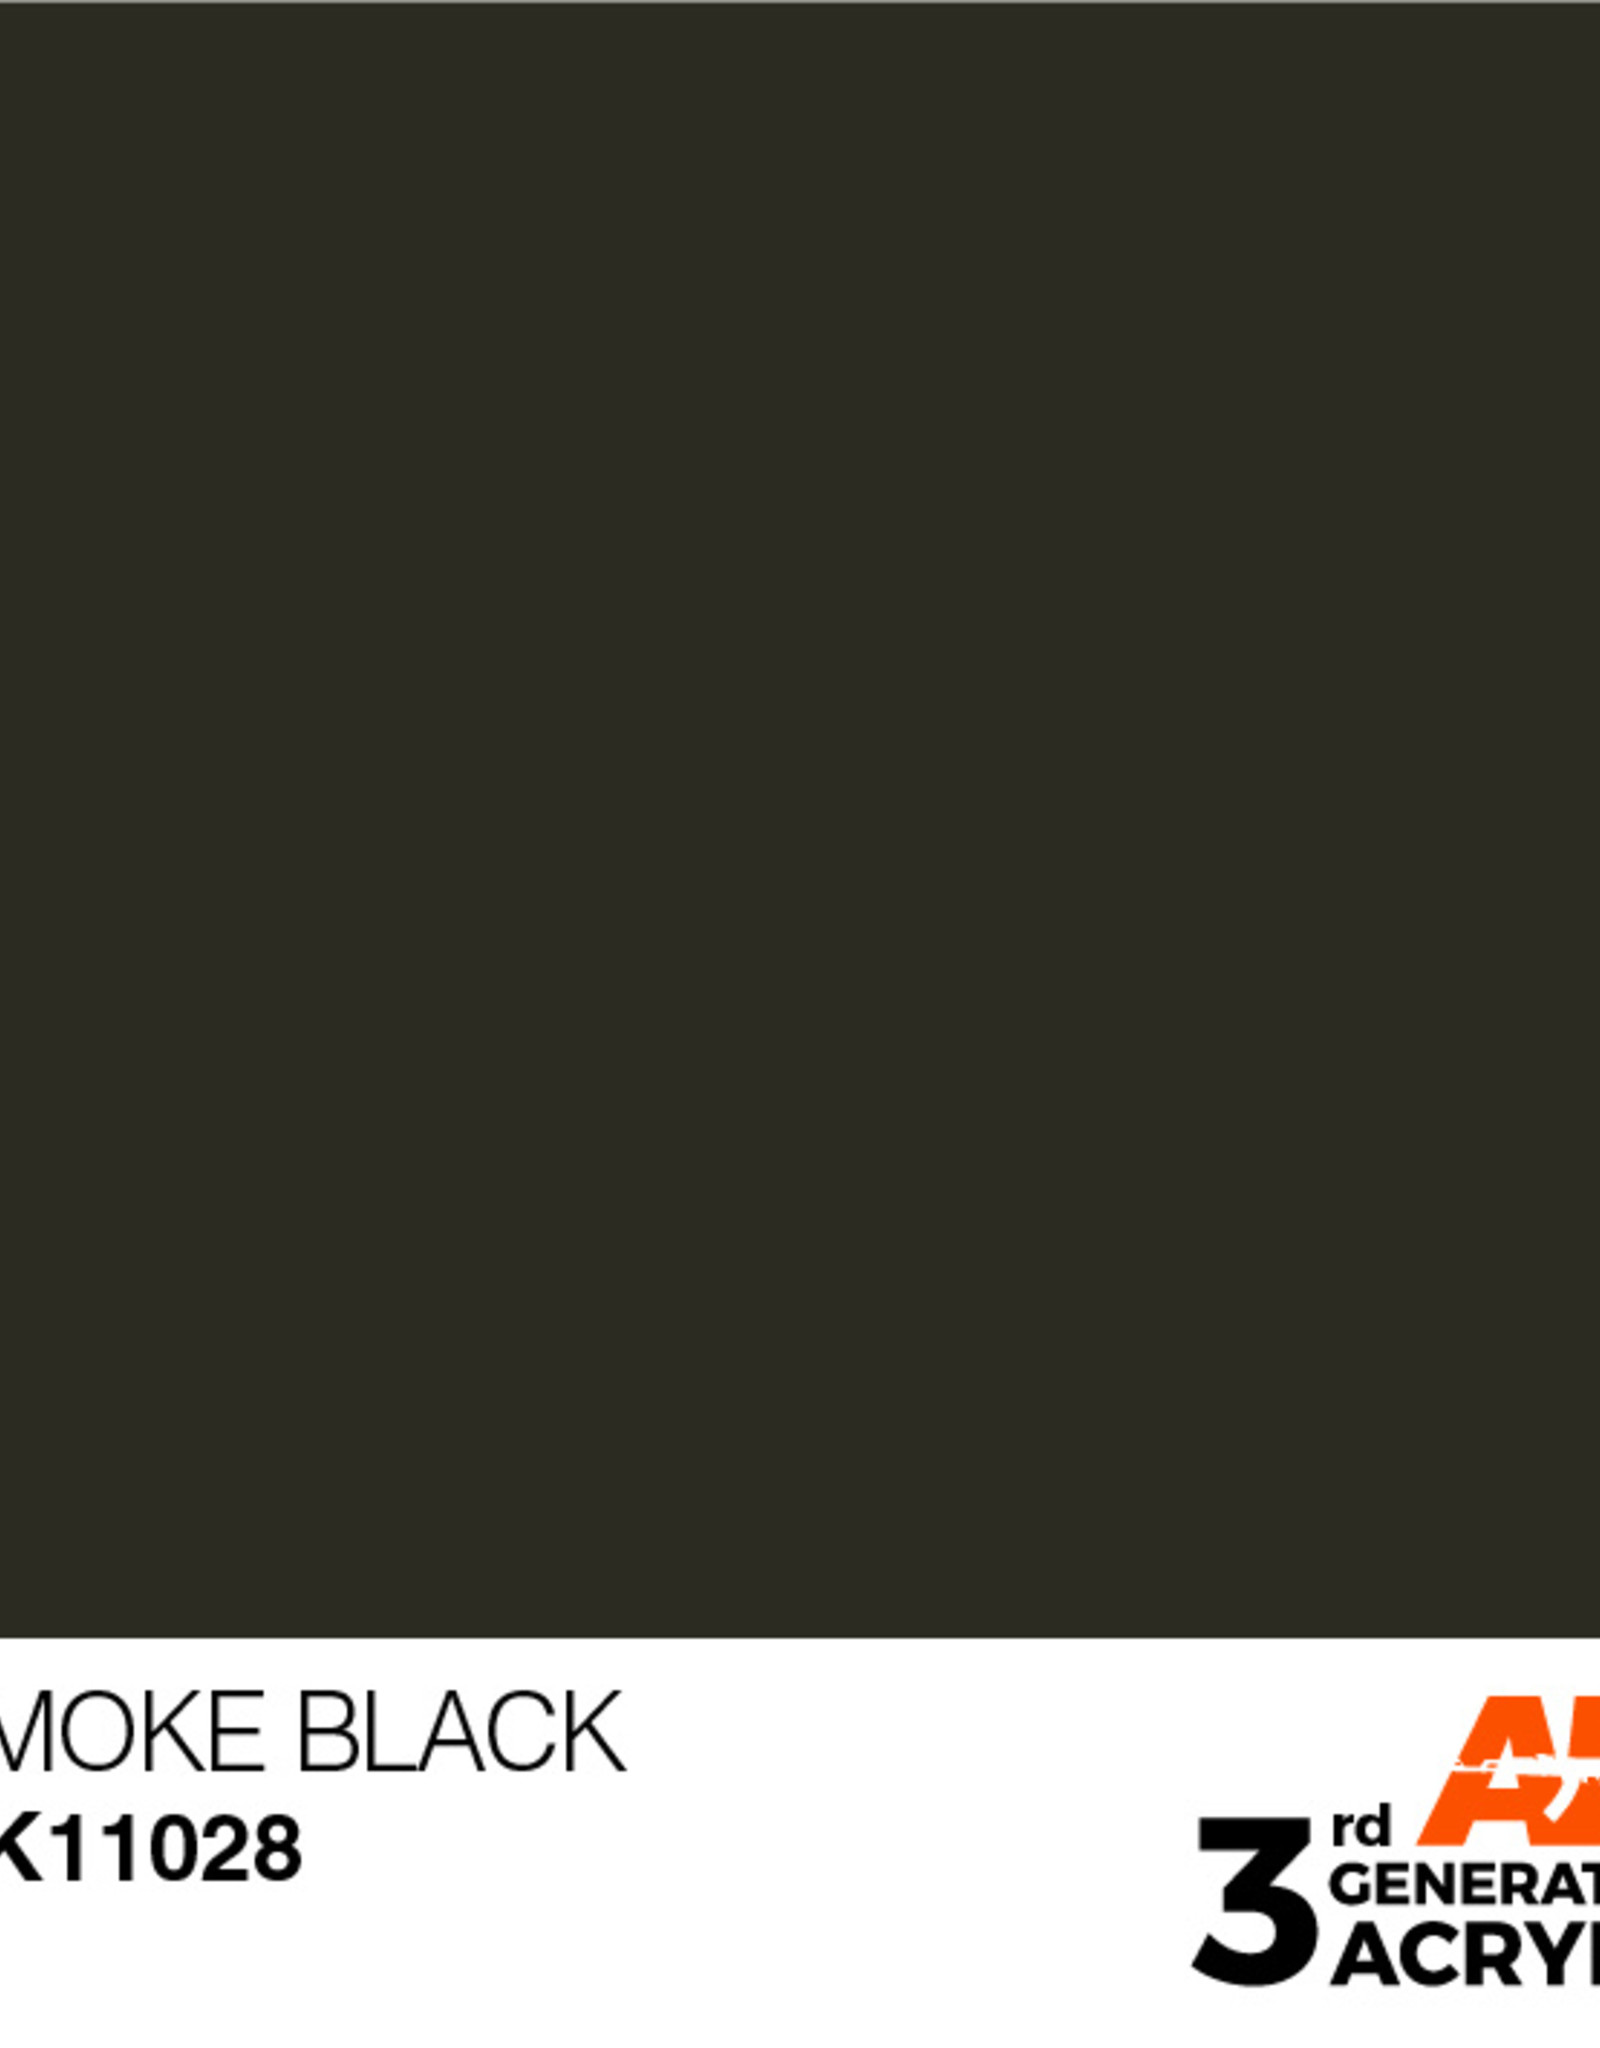 AK Interactive AK 3rd Gen Acrylics: Smoke Black (17ml)